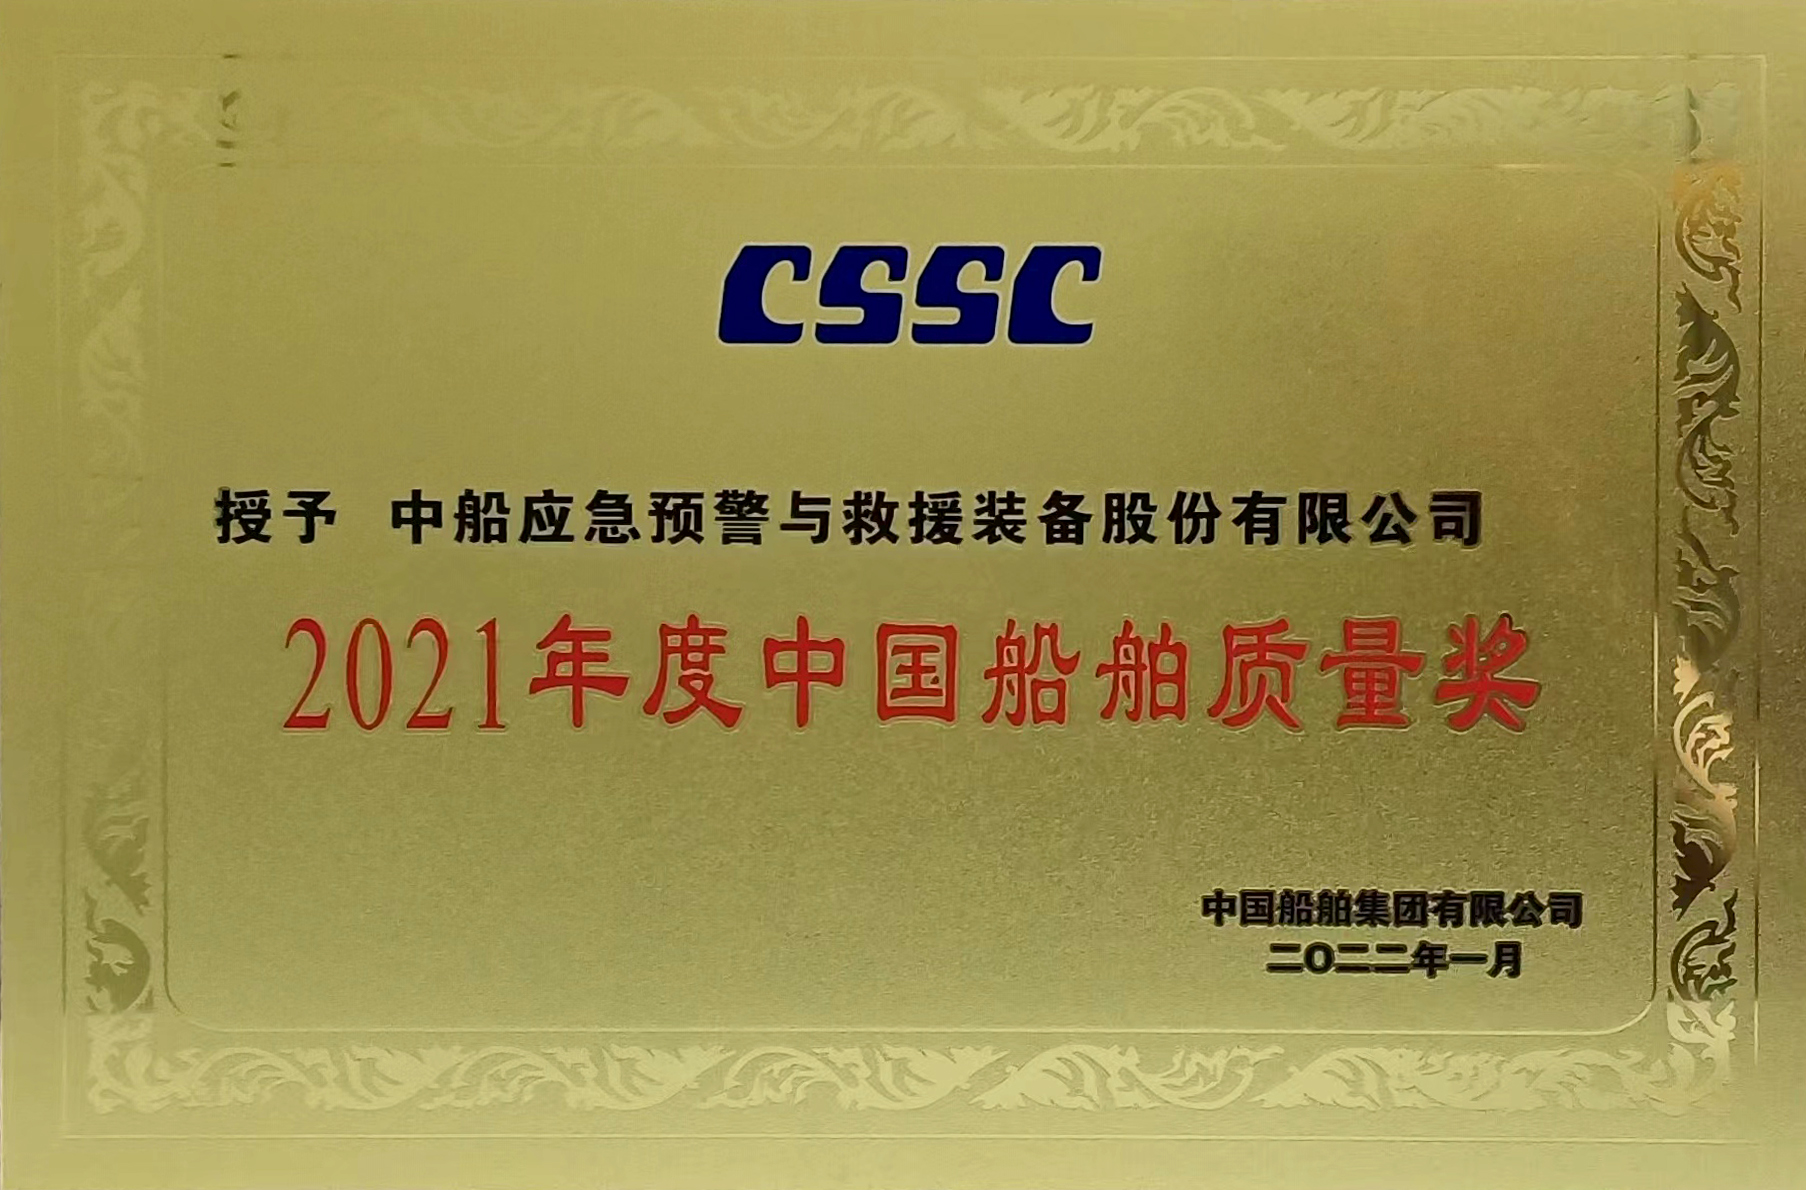 2021年中国船舶质量奖